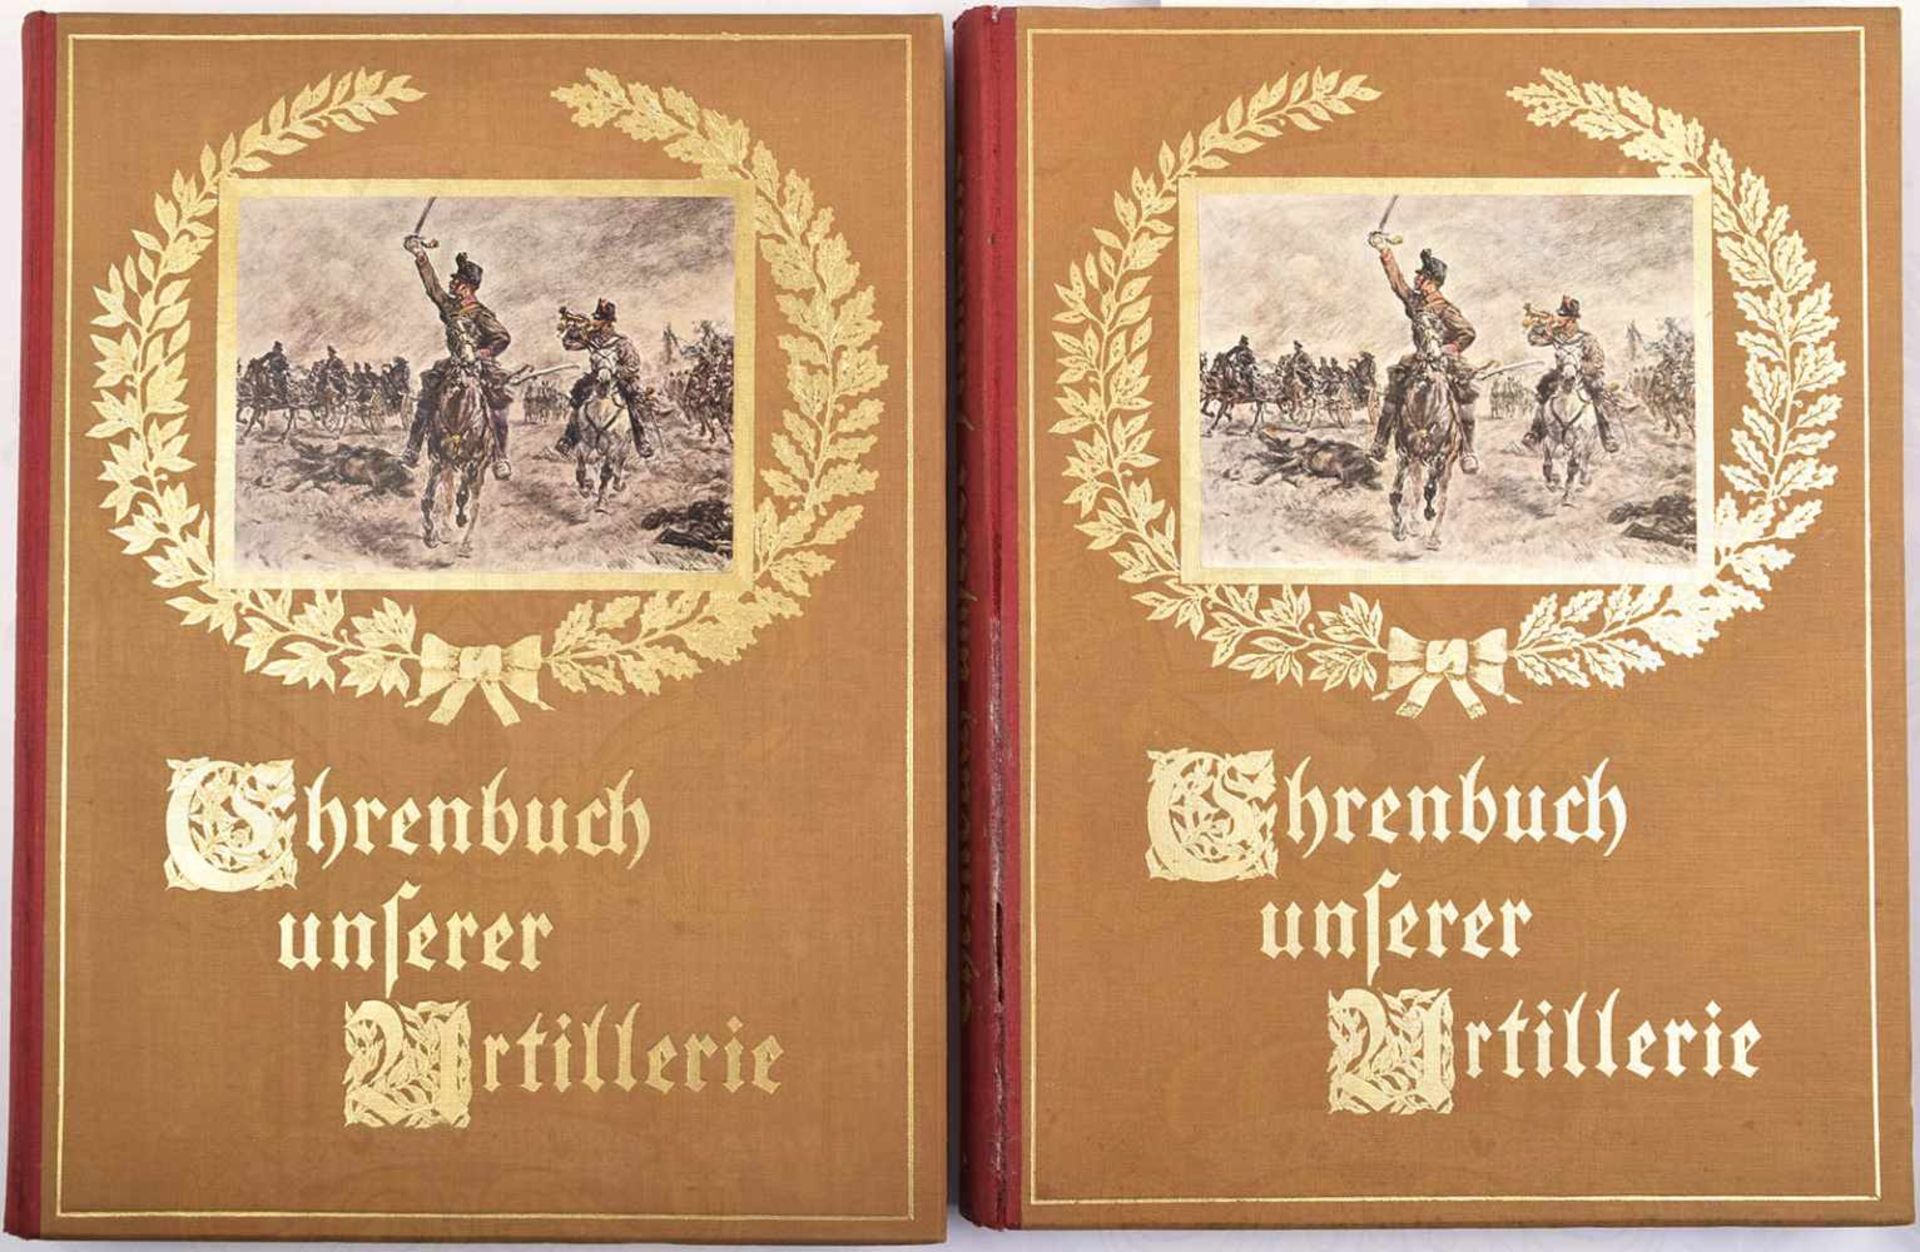 EHRENBUCH UNSERER ARTILLERIE, , 2 Bde., Reichsbund d. Art.-Vereingungen Österreichs, Wien 1935/36,